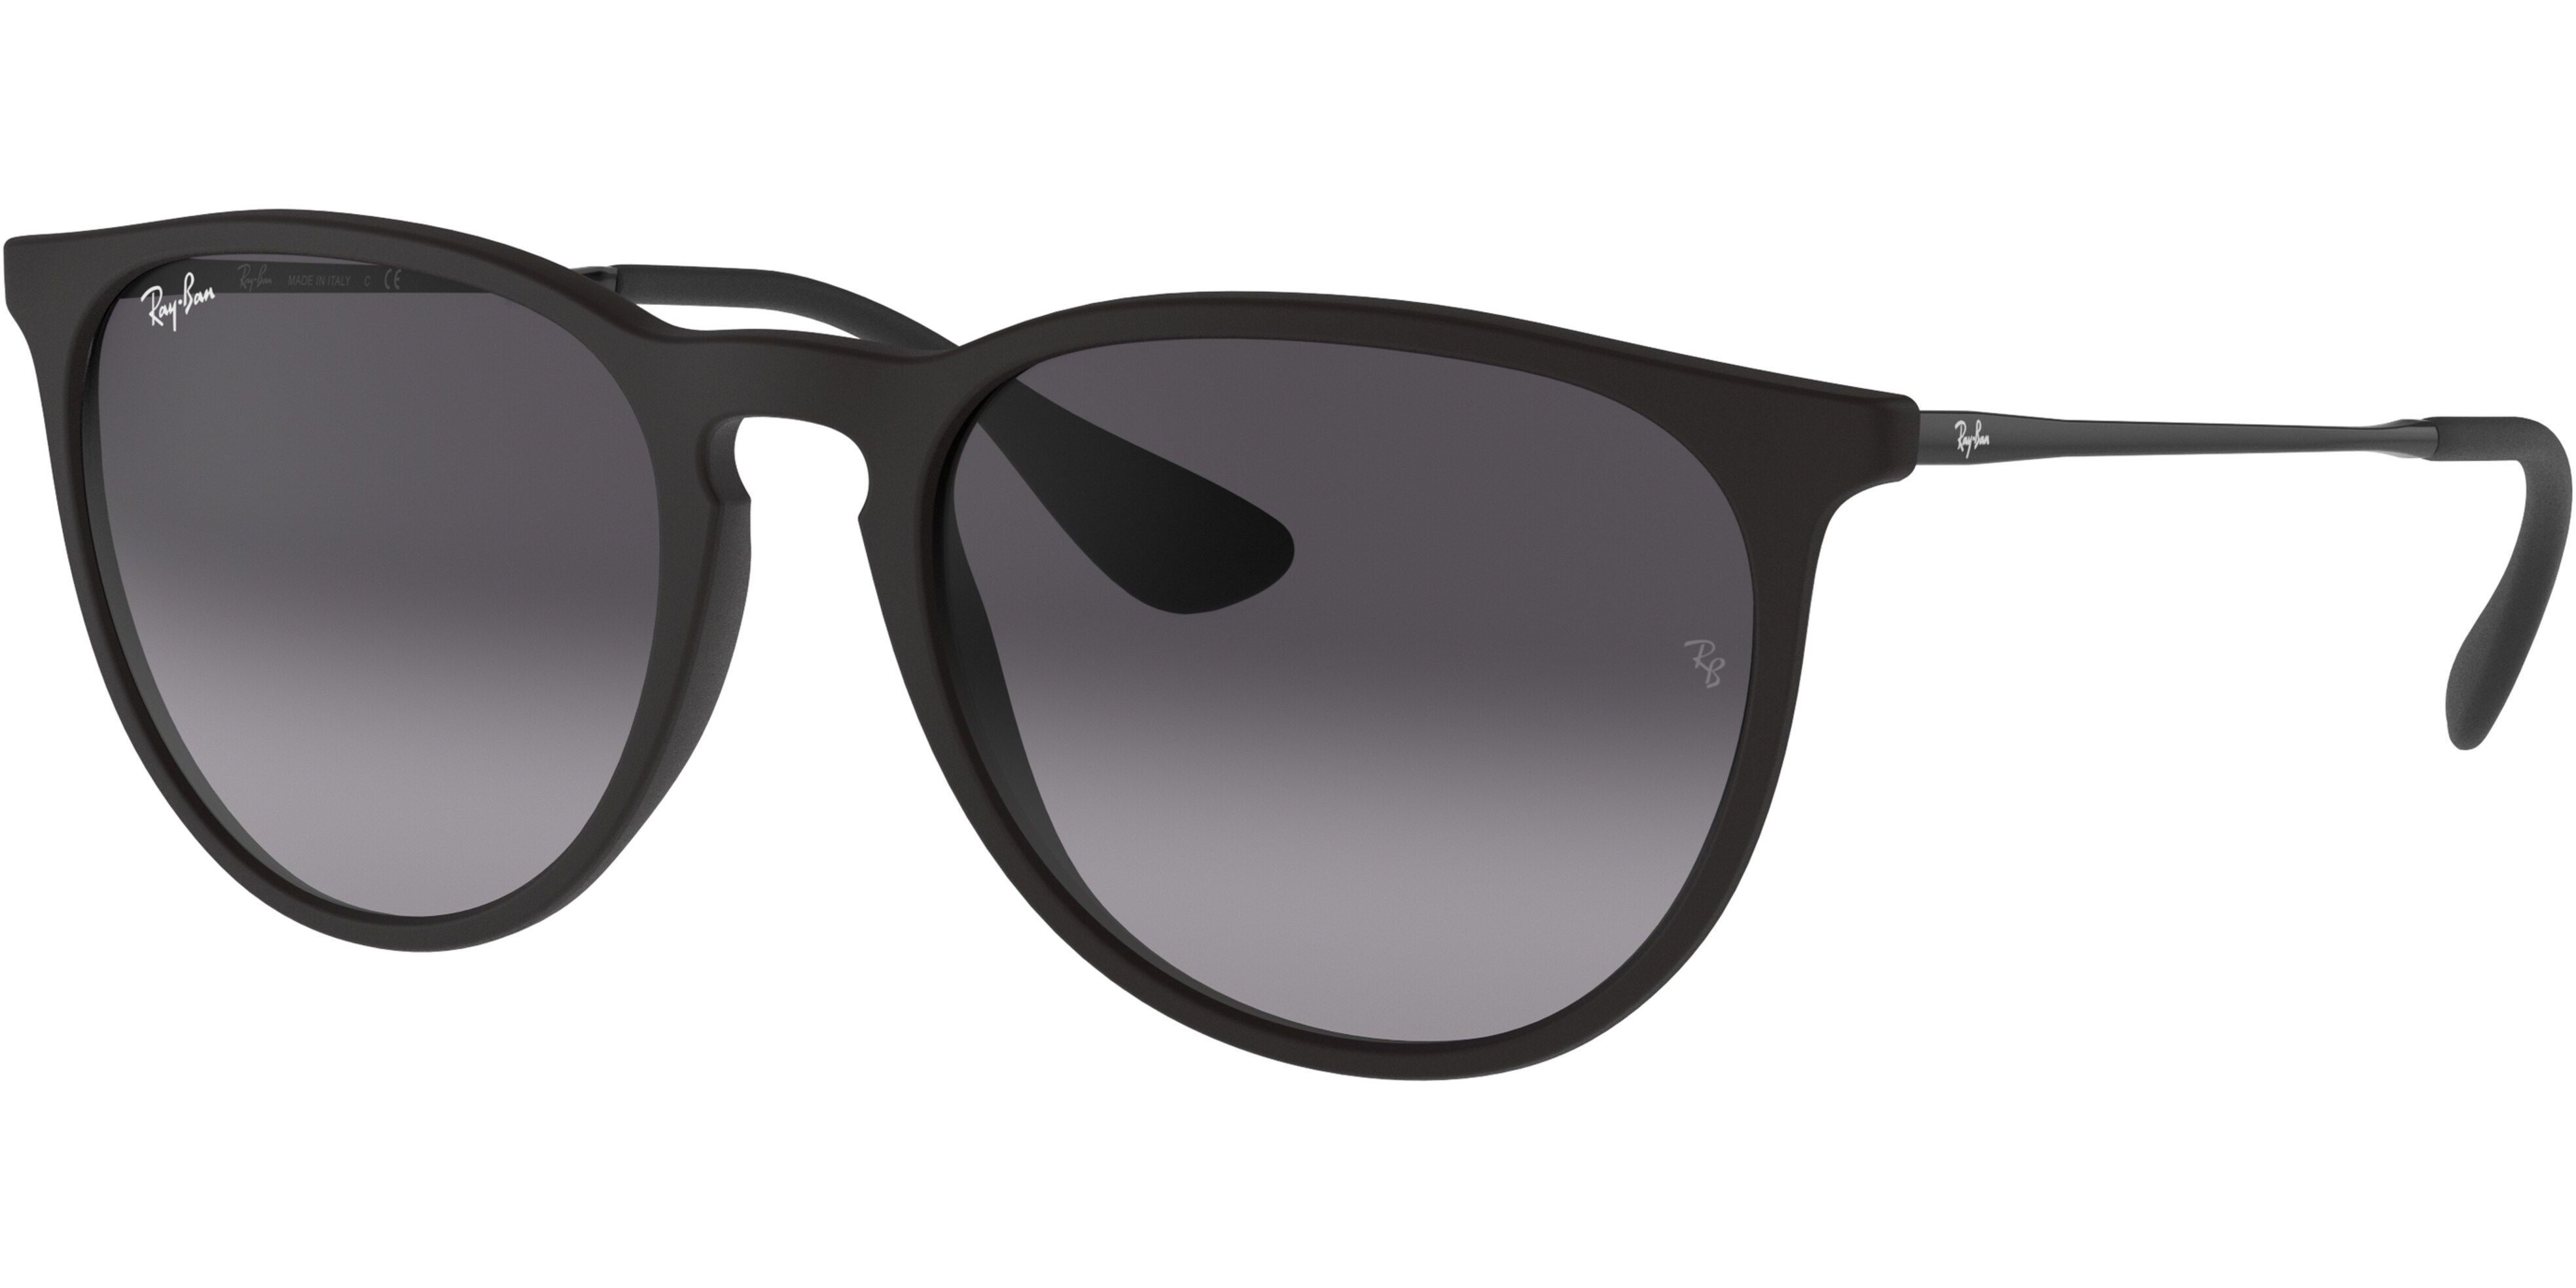 Sluneční brýle Ray-Ban® model 4171, barva obruby černá mat stříbrná, čočka šedá gradál, kód barevné varianty 6228G. 